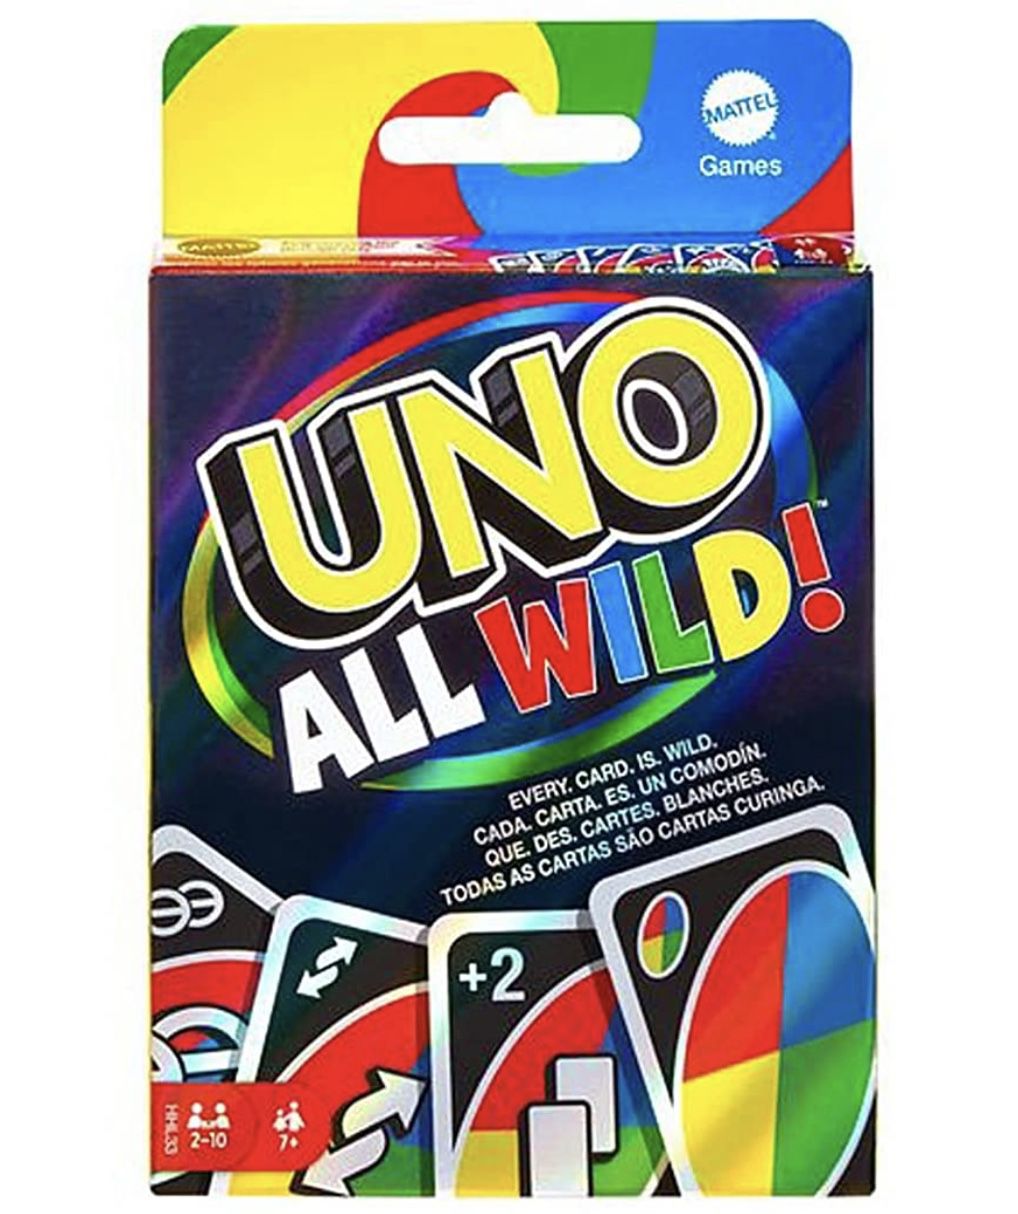 UNO All Wild Kartenspiel mit 112 Karten für 5€ (statt 8€)